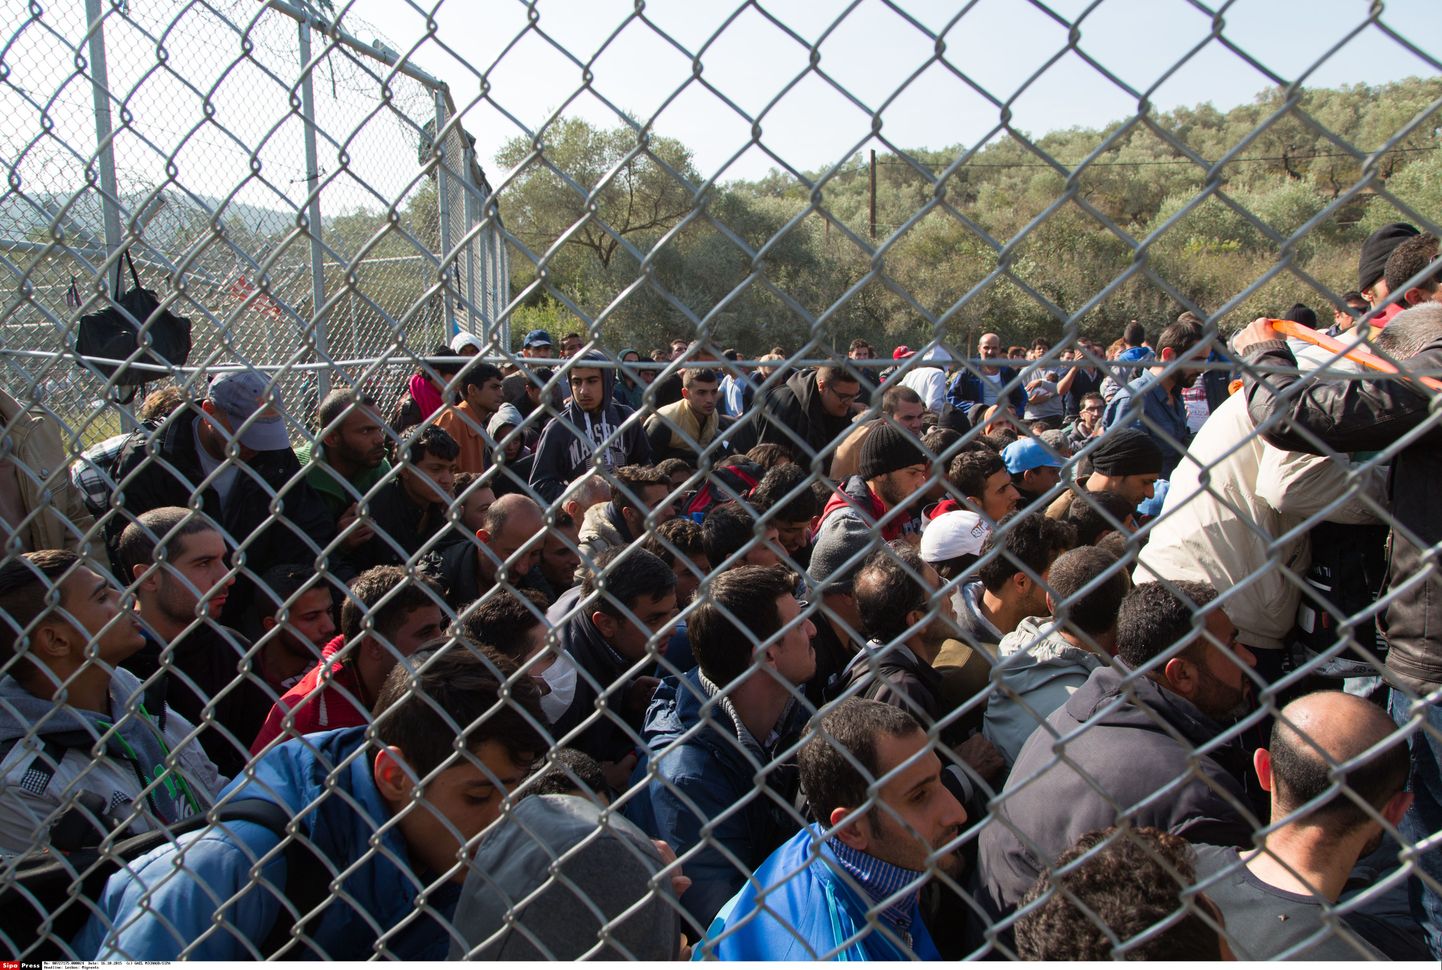 Lesbose saar on üksi peamisi väravaid, mille kaudu saabuvad Süüria põgenikud Euroopasse. Tänavu on juba 400 000 põgenikku Türgi kaudu sellele saarele jõudnud.Foto on tehtud reedel.